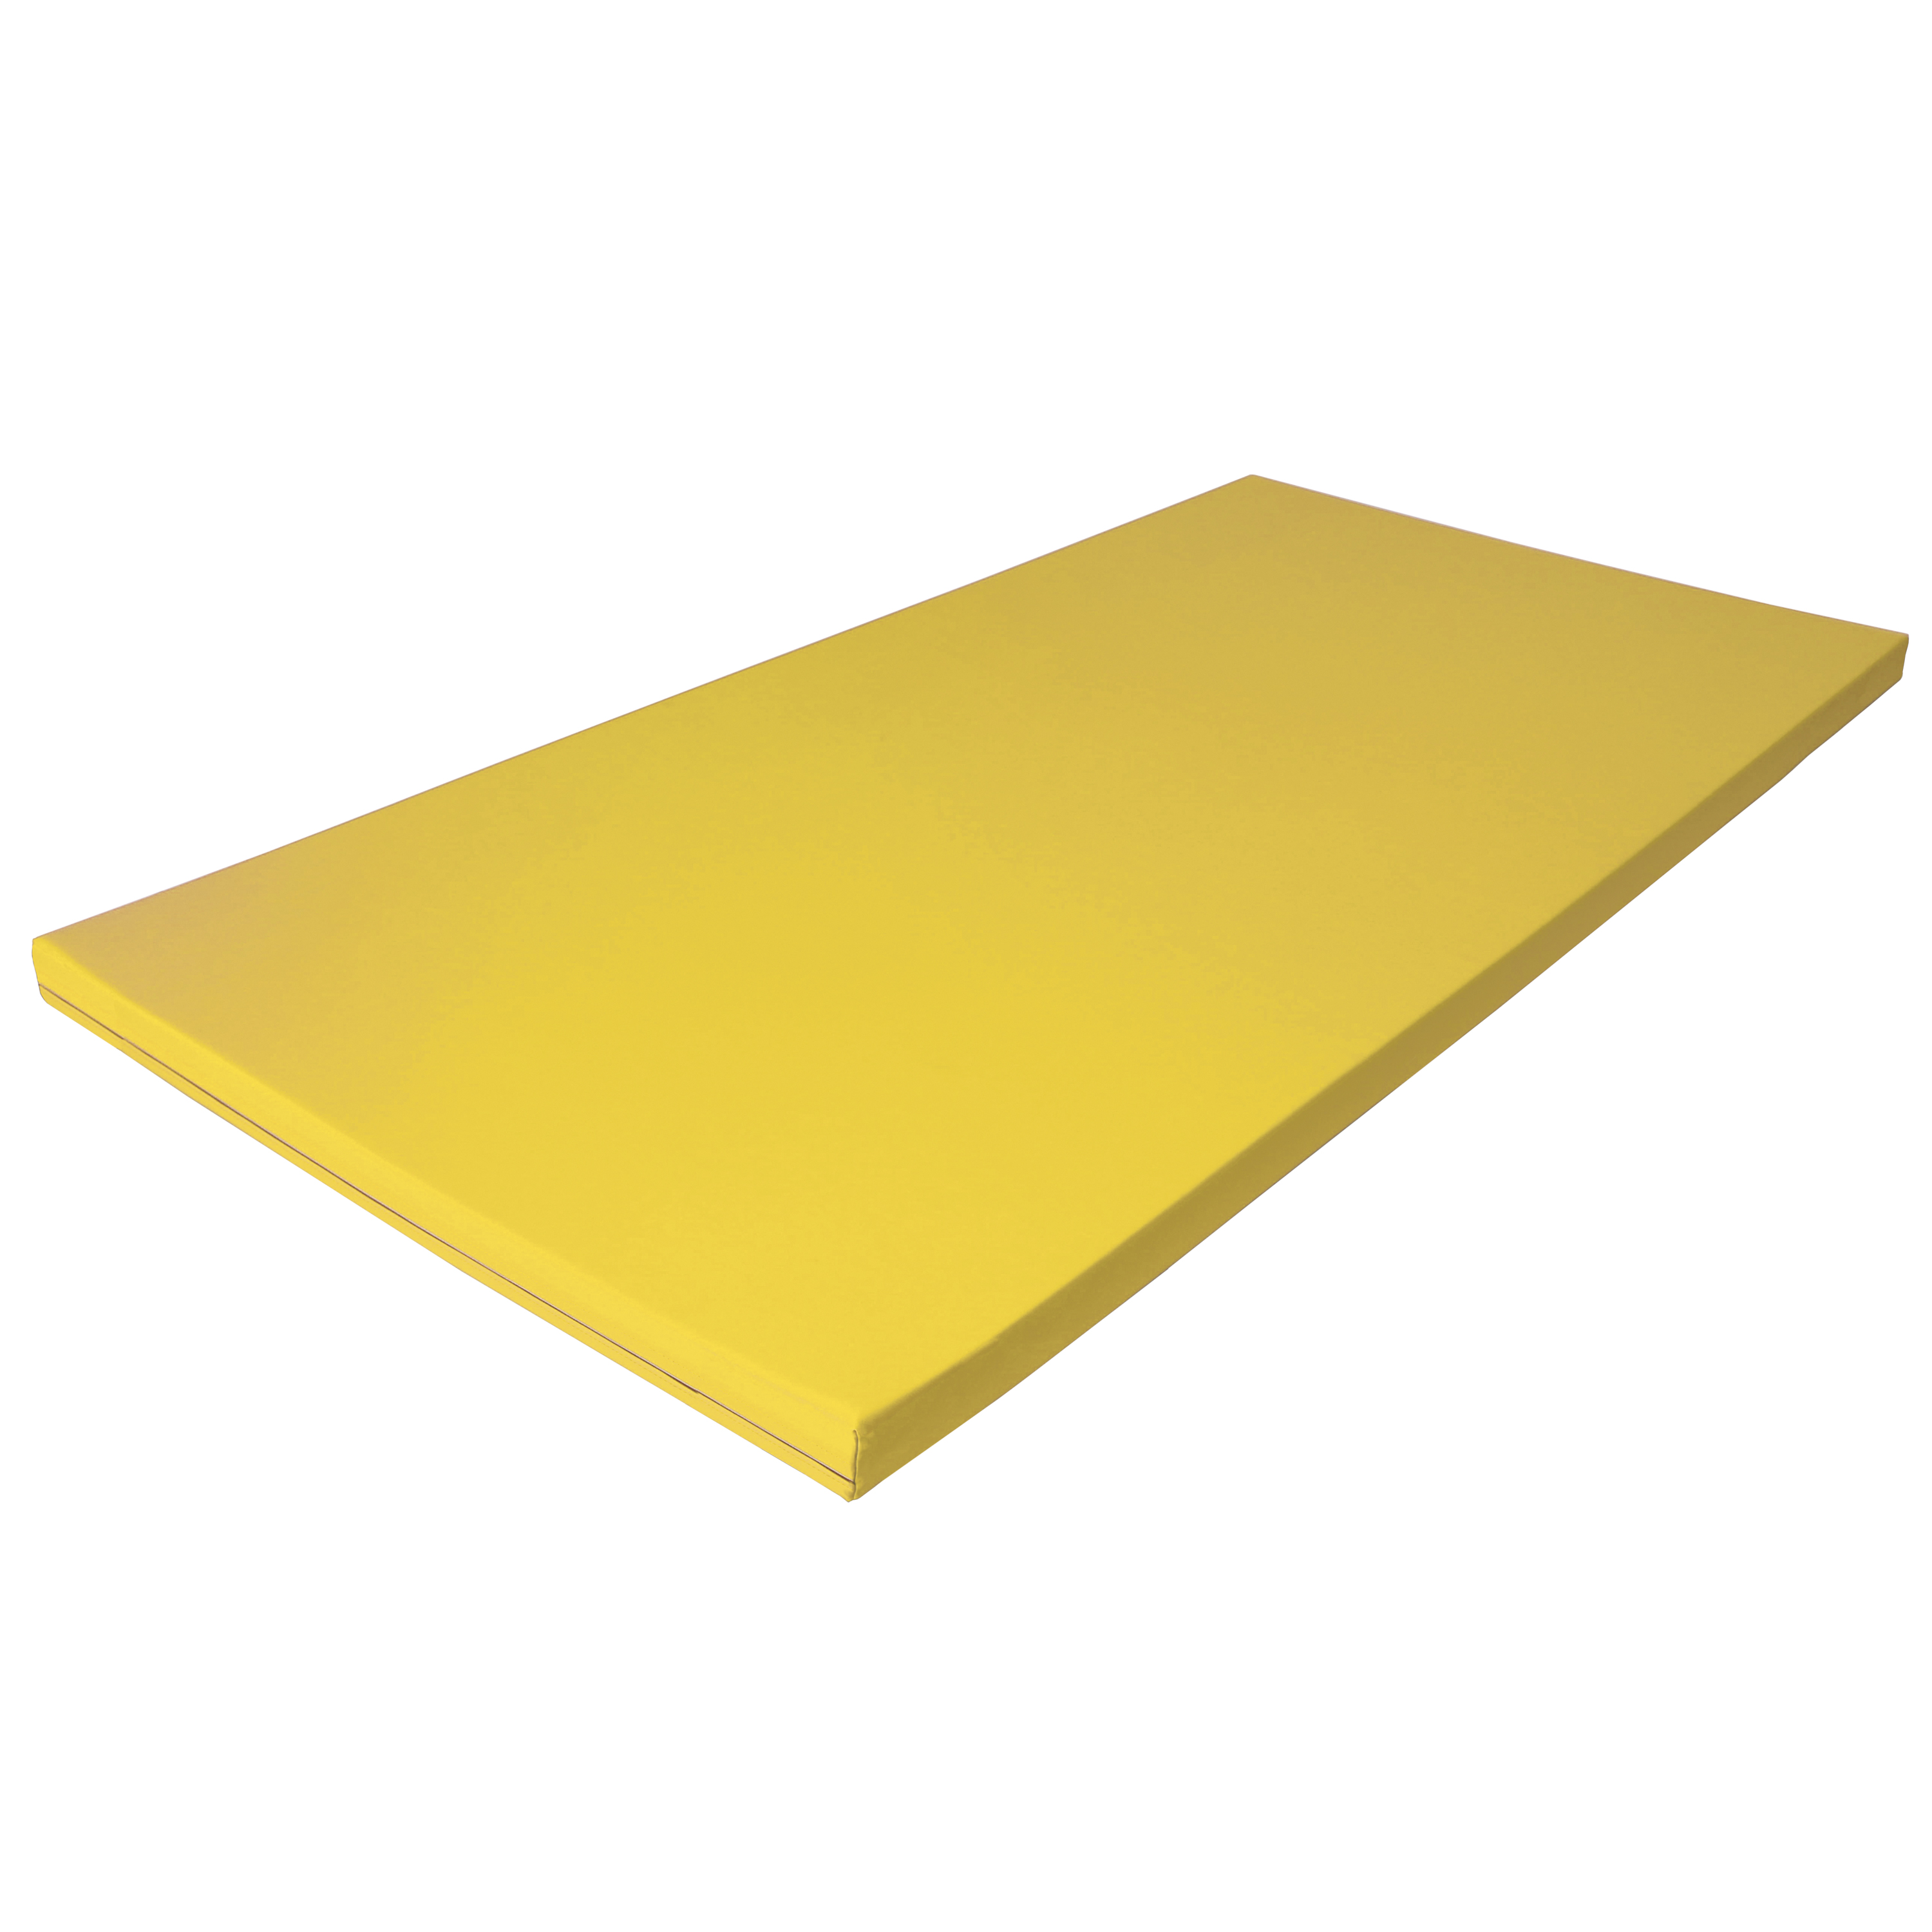 Fallschutzmatte Superleicht 'gelb', 200 x 100 cm